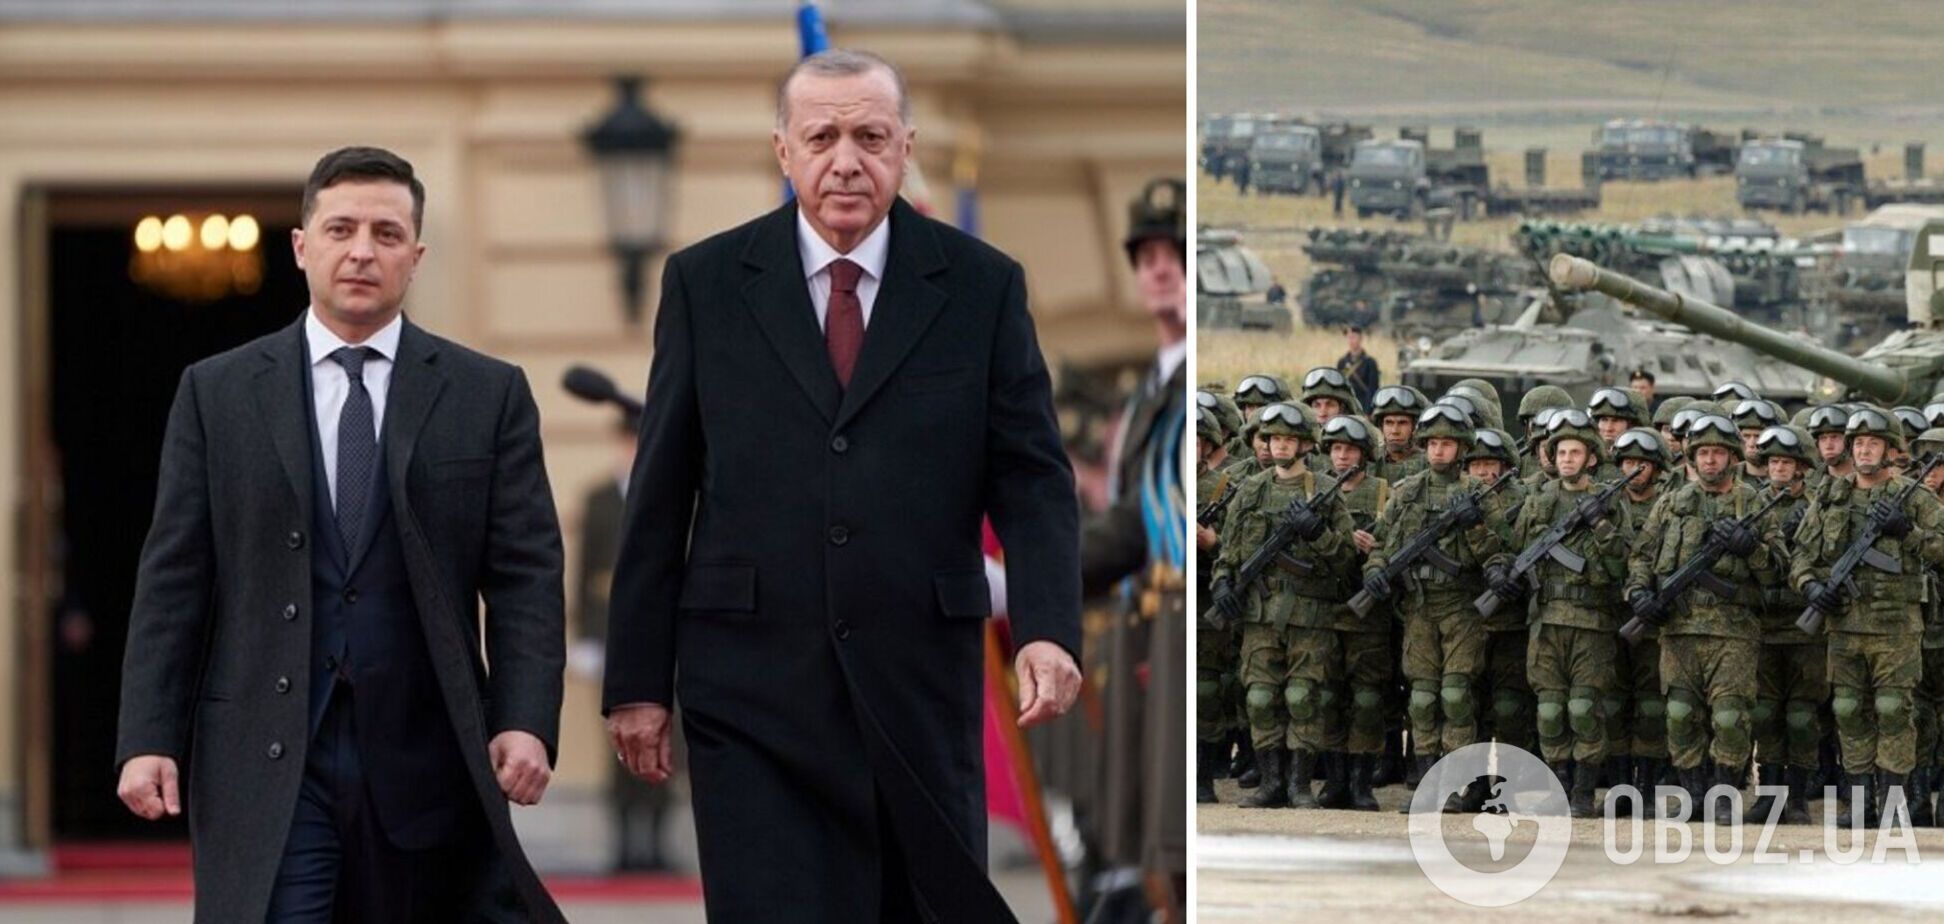 Туреччина готова зробити свій внесок у підтримання миру, заявив Ердоган